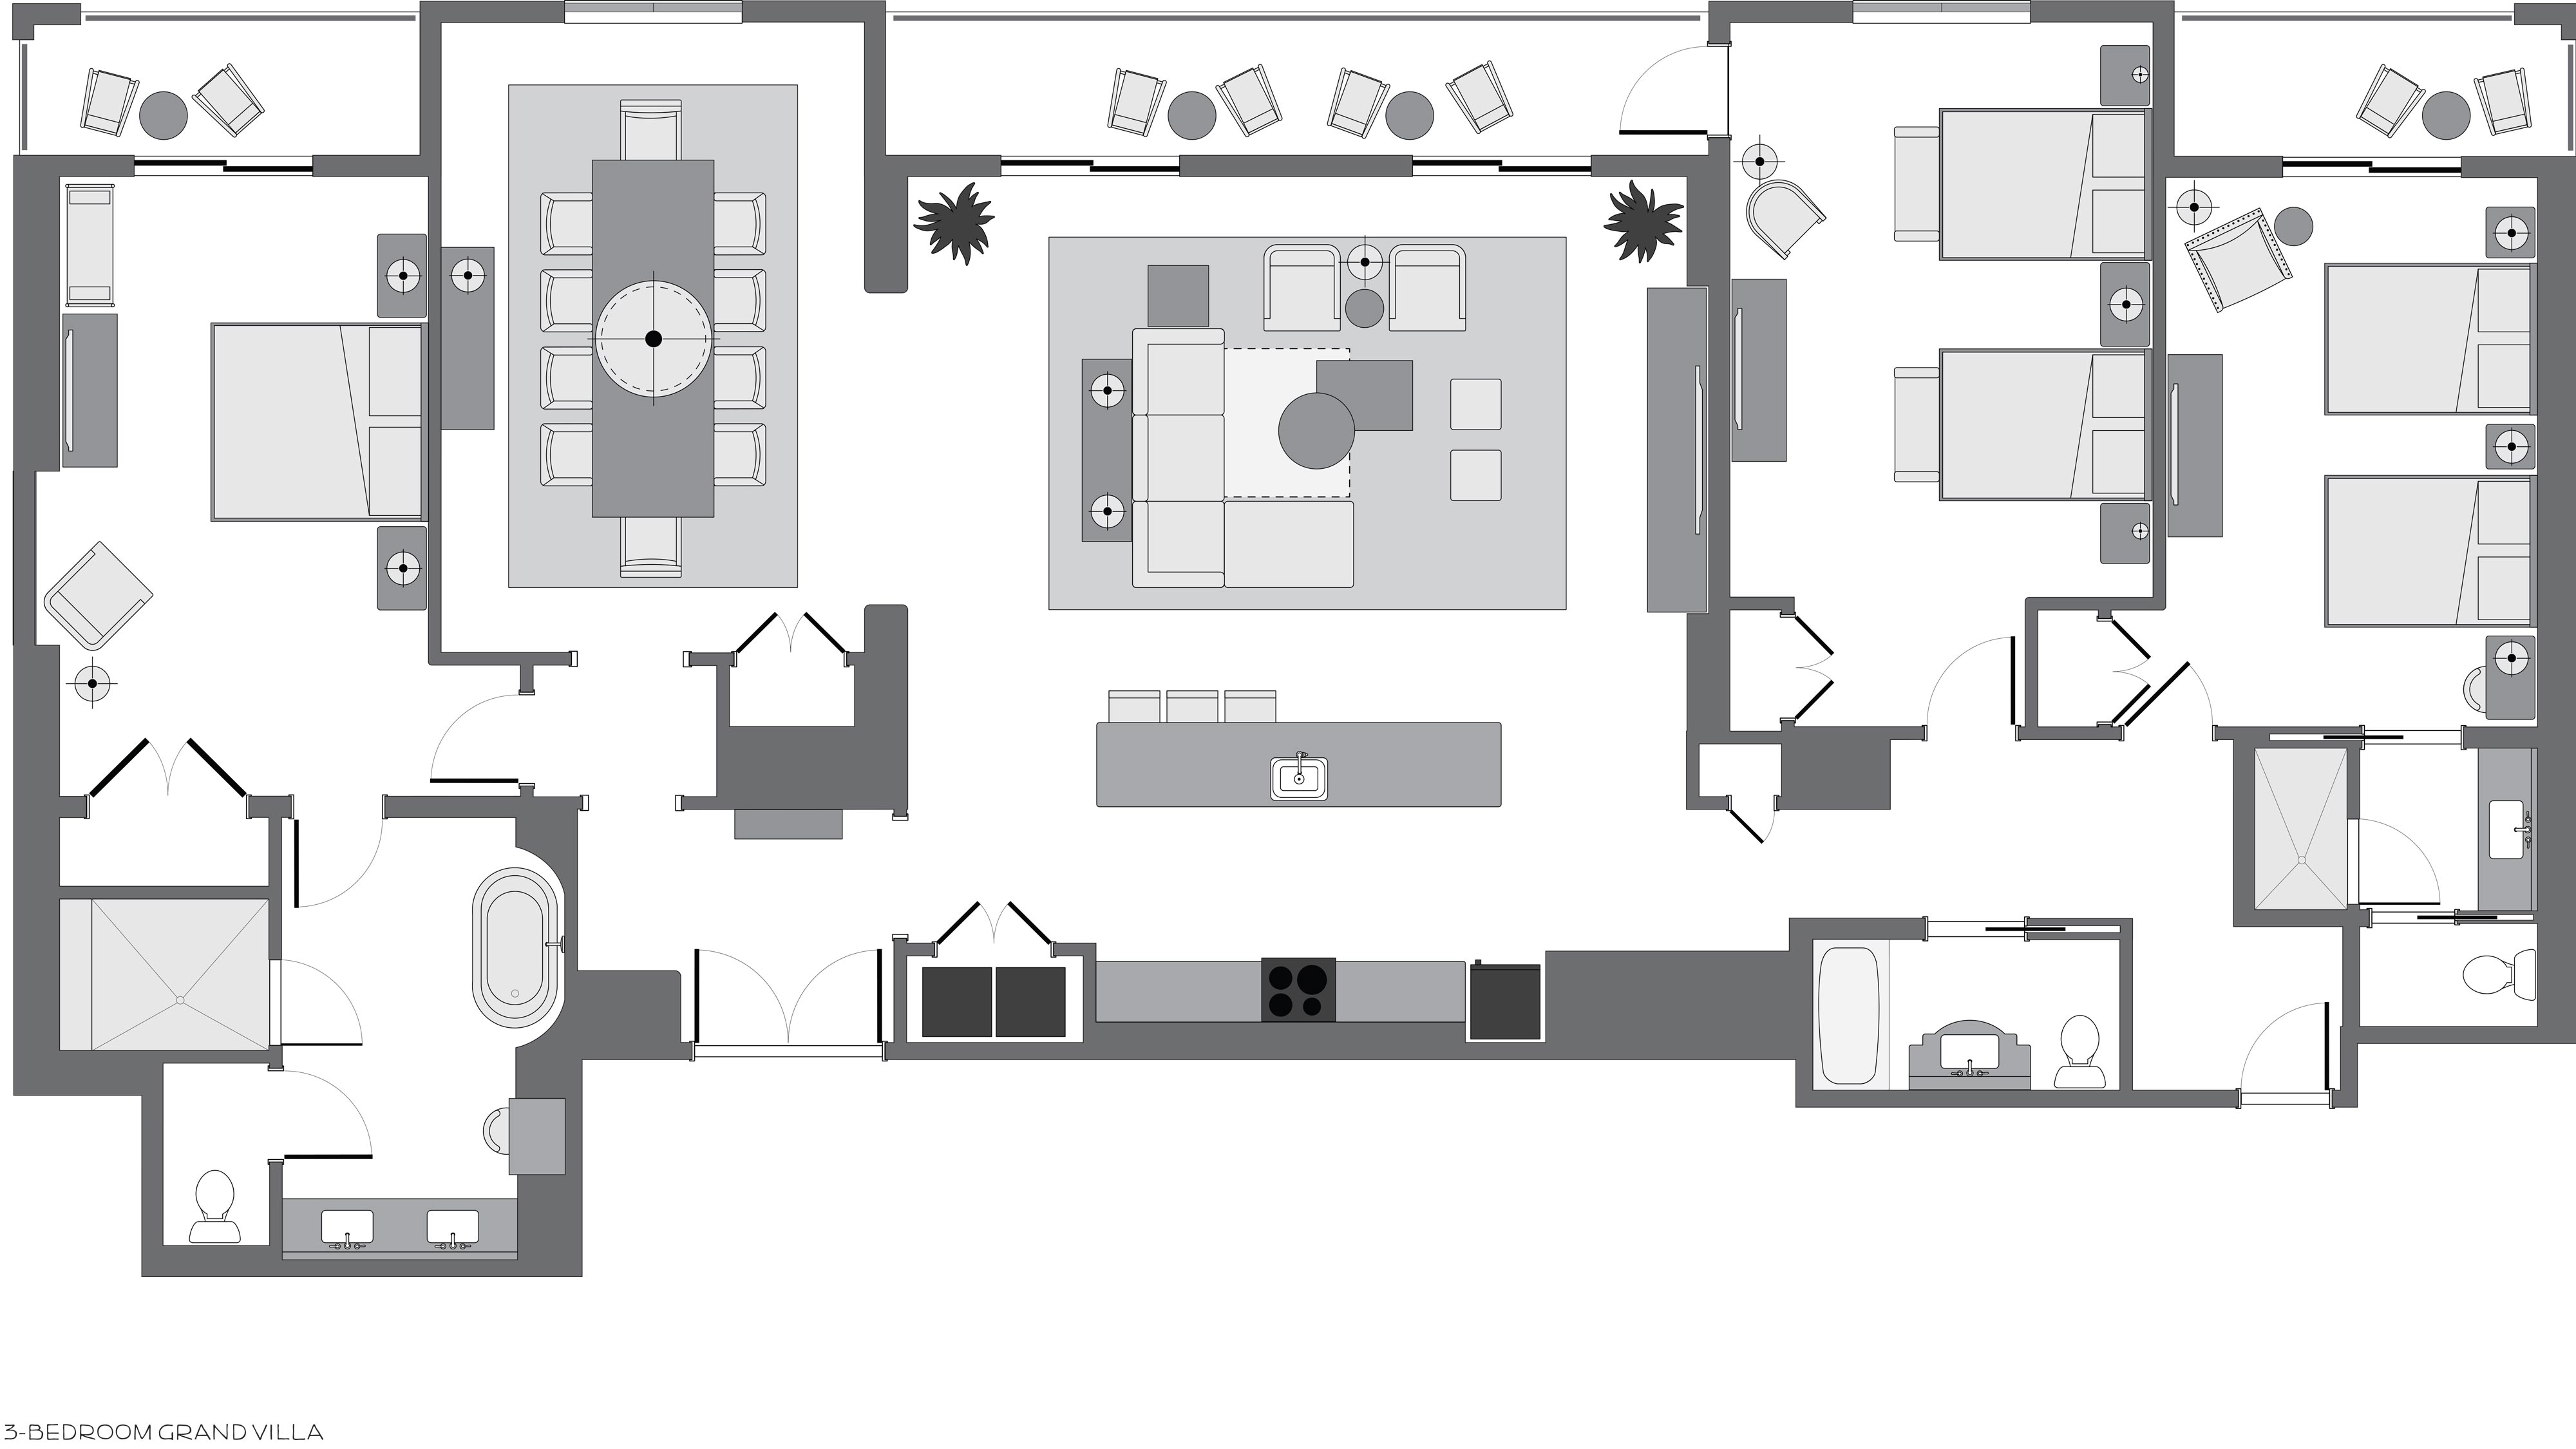 Riviera-3bedroom-GrandVilla-Floorplan-16x9